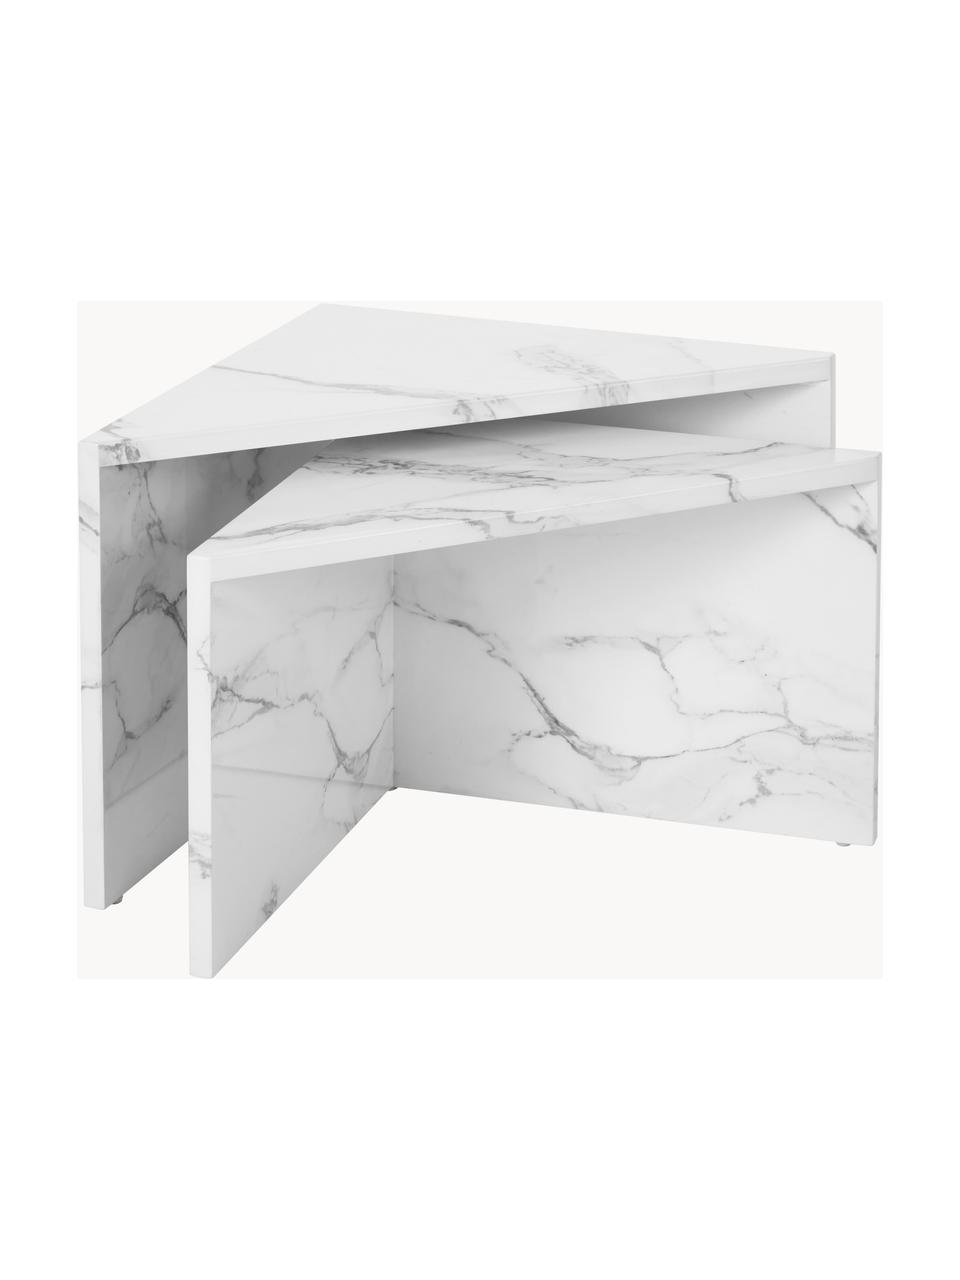 Sada konferenčních stolků v mramorovém vzhledu Vilma, 2 díly, MDF deska (dřevovláknitá deska střední hustoty), potažená vrstvou lakovaného papíru, Bílá, mramorovaná, Sada s různými velikostmi